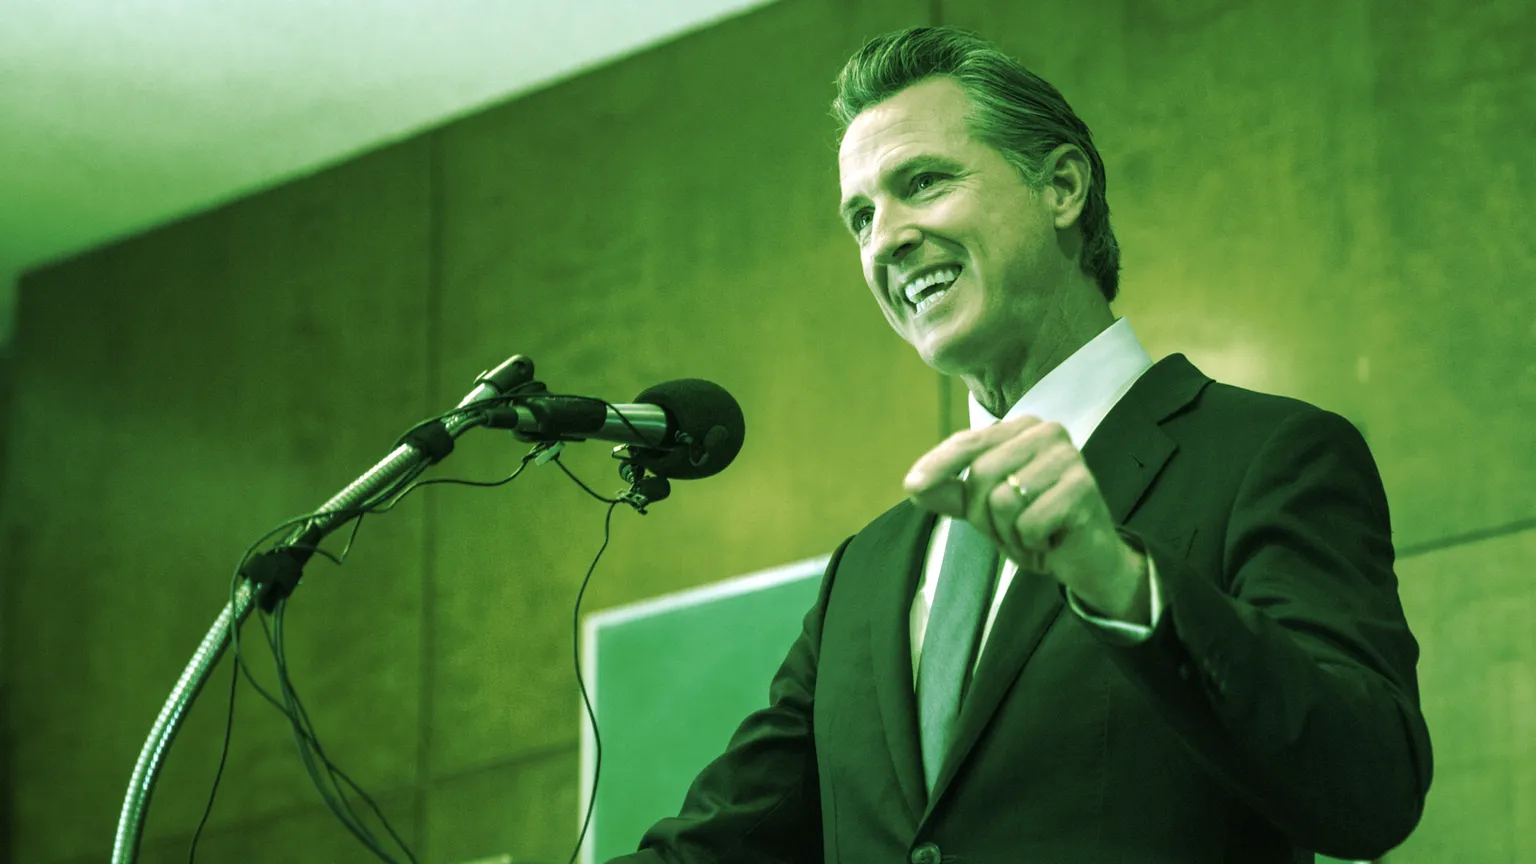 Gobernador de California Gavin Newsom. Imagen: Shutterstock